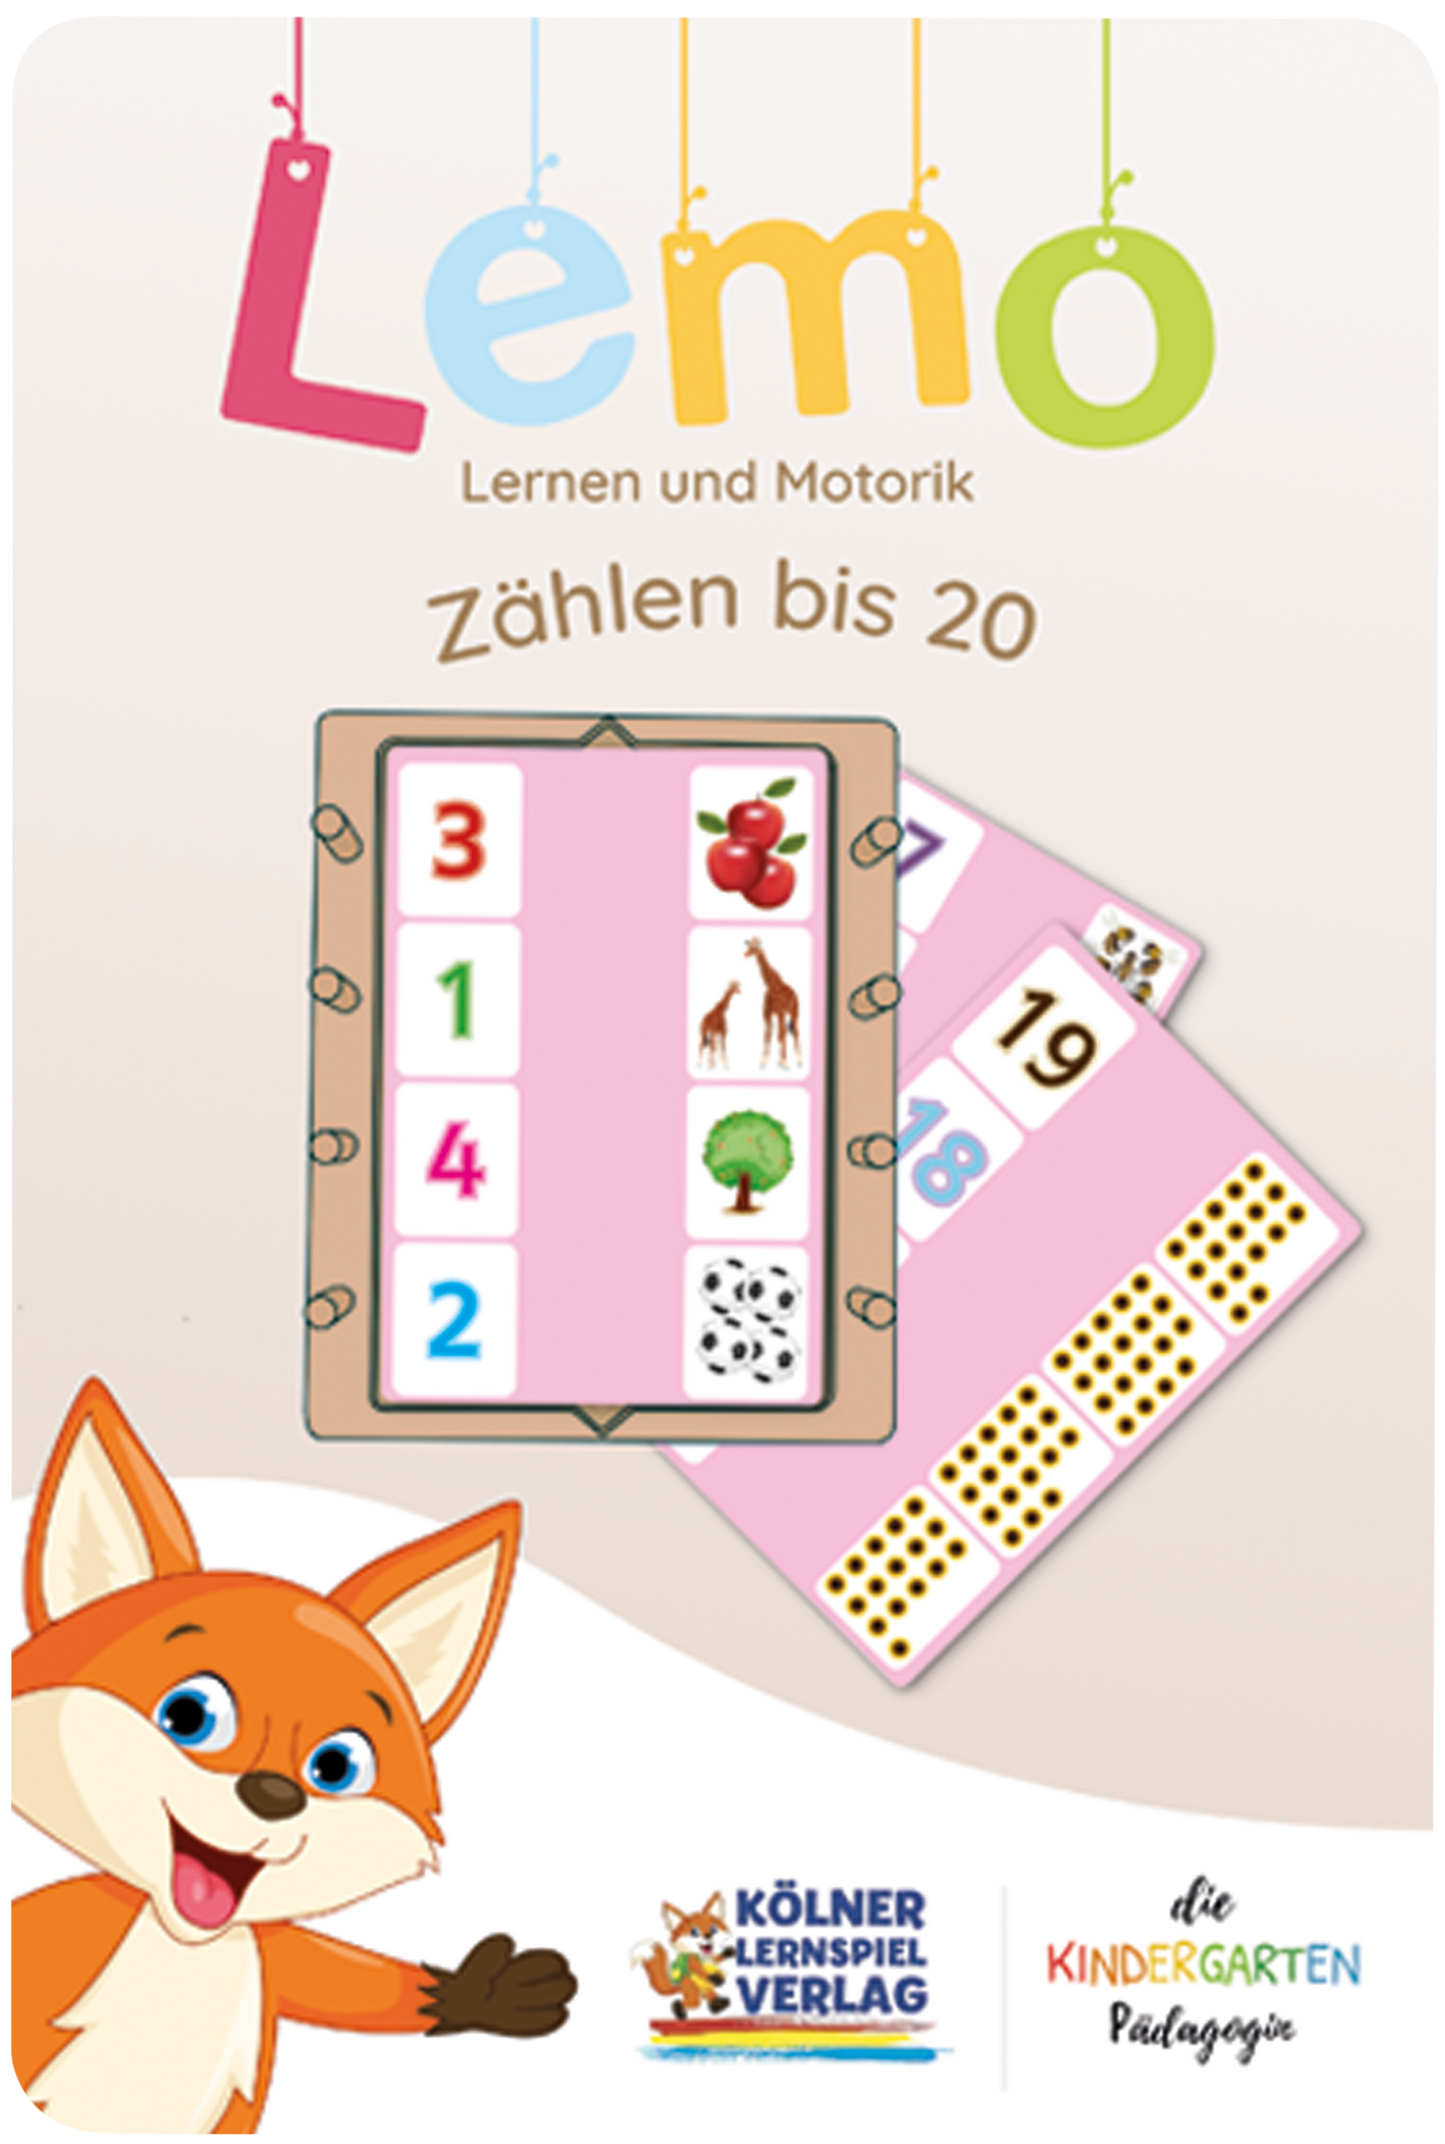 Lemo Kartensatz Zählen bis 20 (ab 5 Jahren)